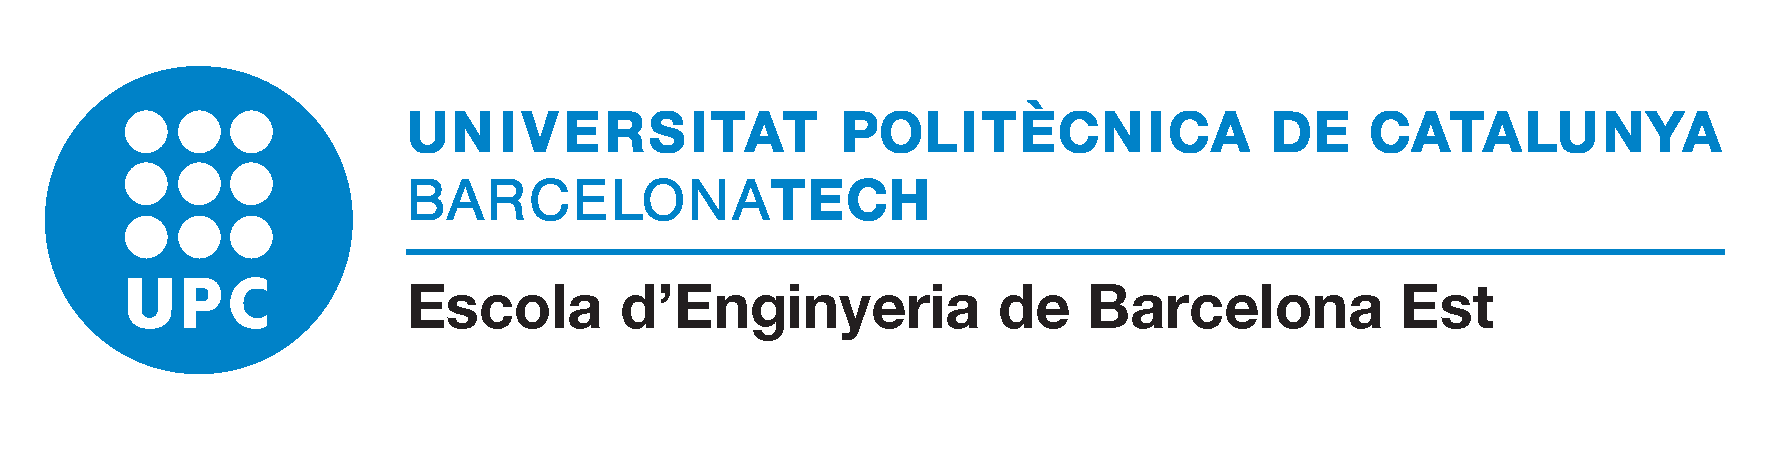 Escola d'Enginyeria de Barcelona Est (EEBE).